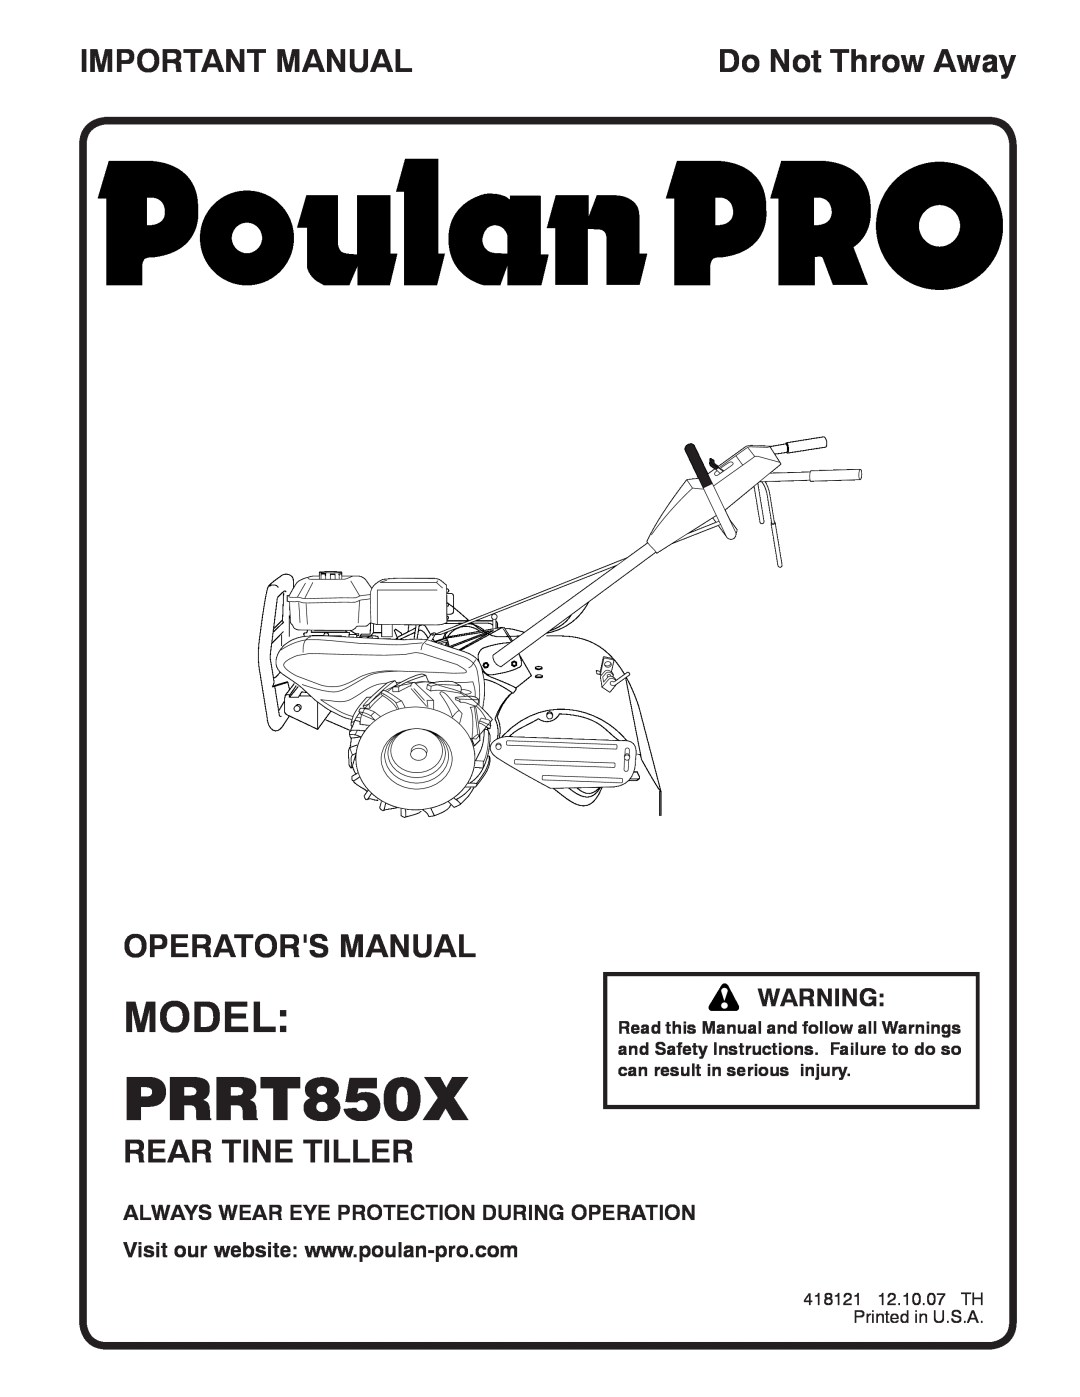 Poulan 96092001500, 418121 manual Model, Important Manual, Operators Manual, Rear Tine Tiller, PRRT850X, Do Not Throw Away 